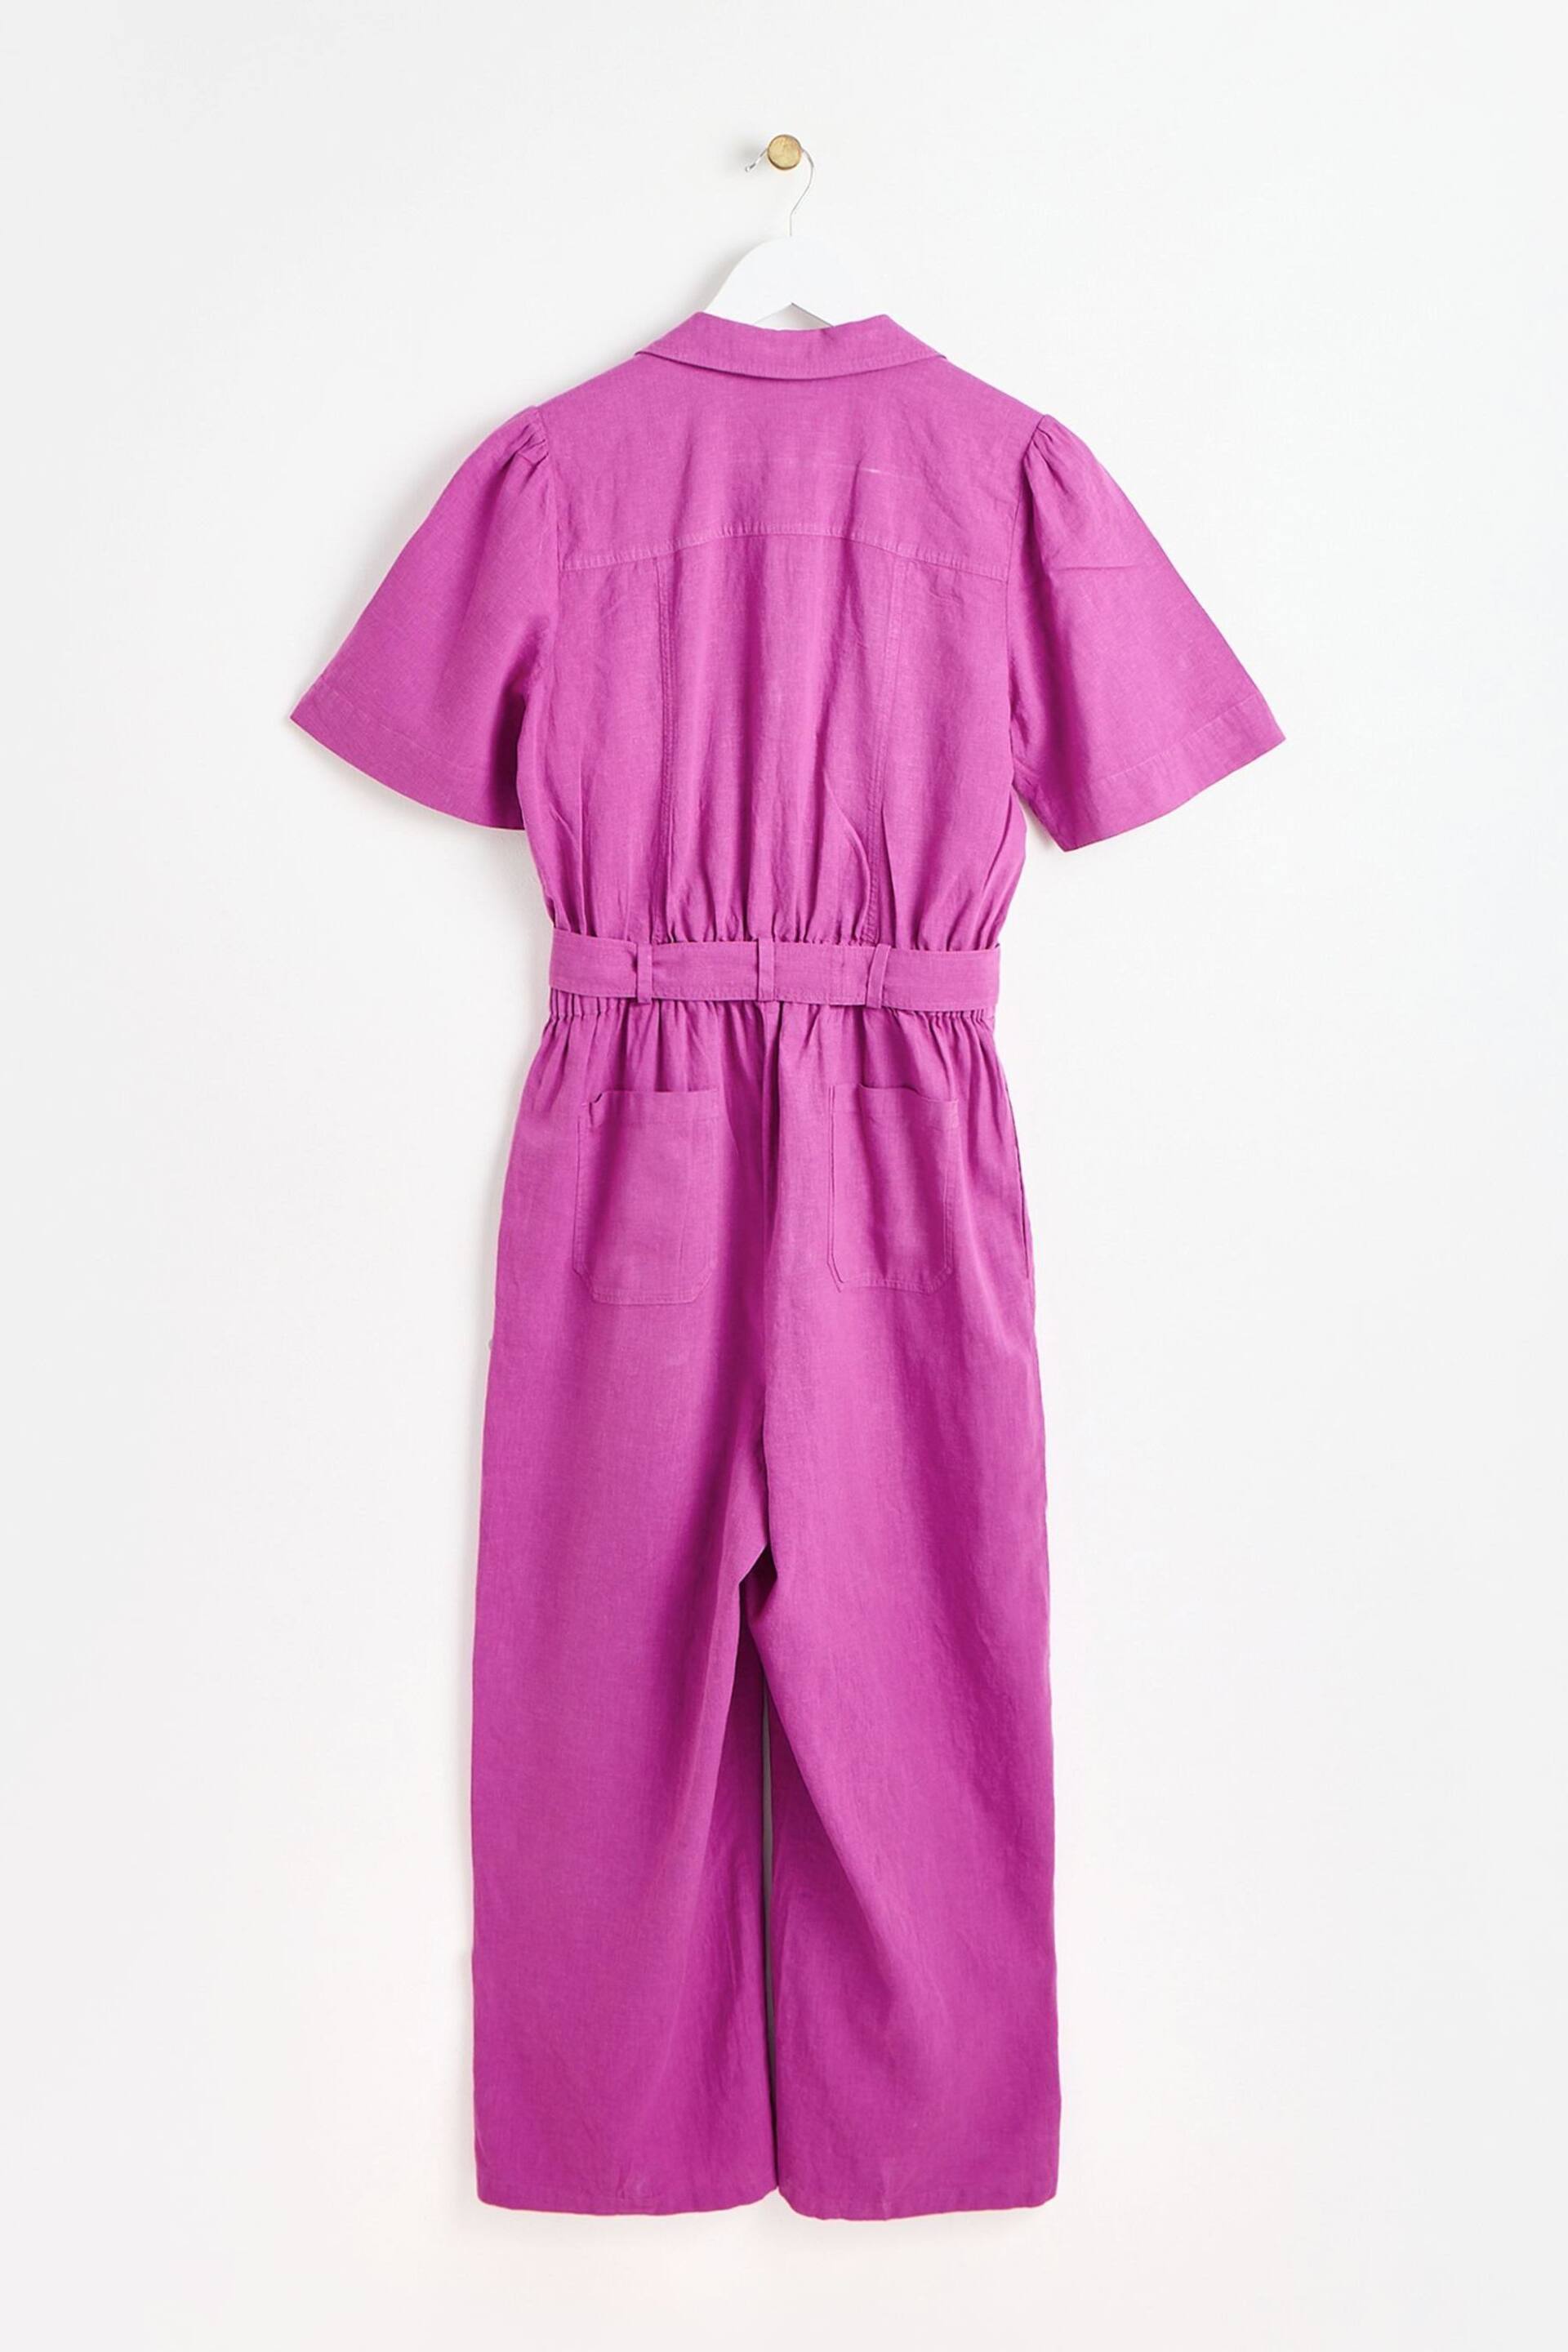 Oliver Bonas Purple Belted Linen Jumpsuit - Image 2 of 8